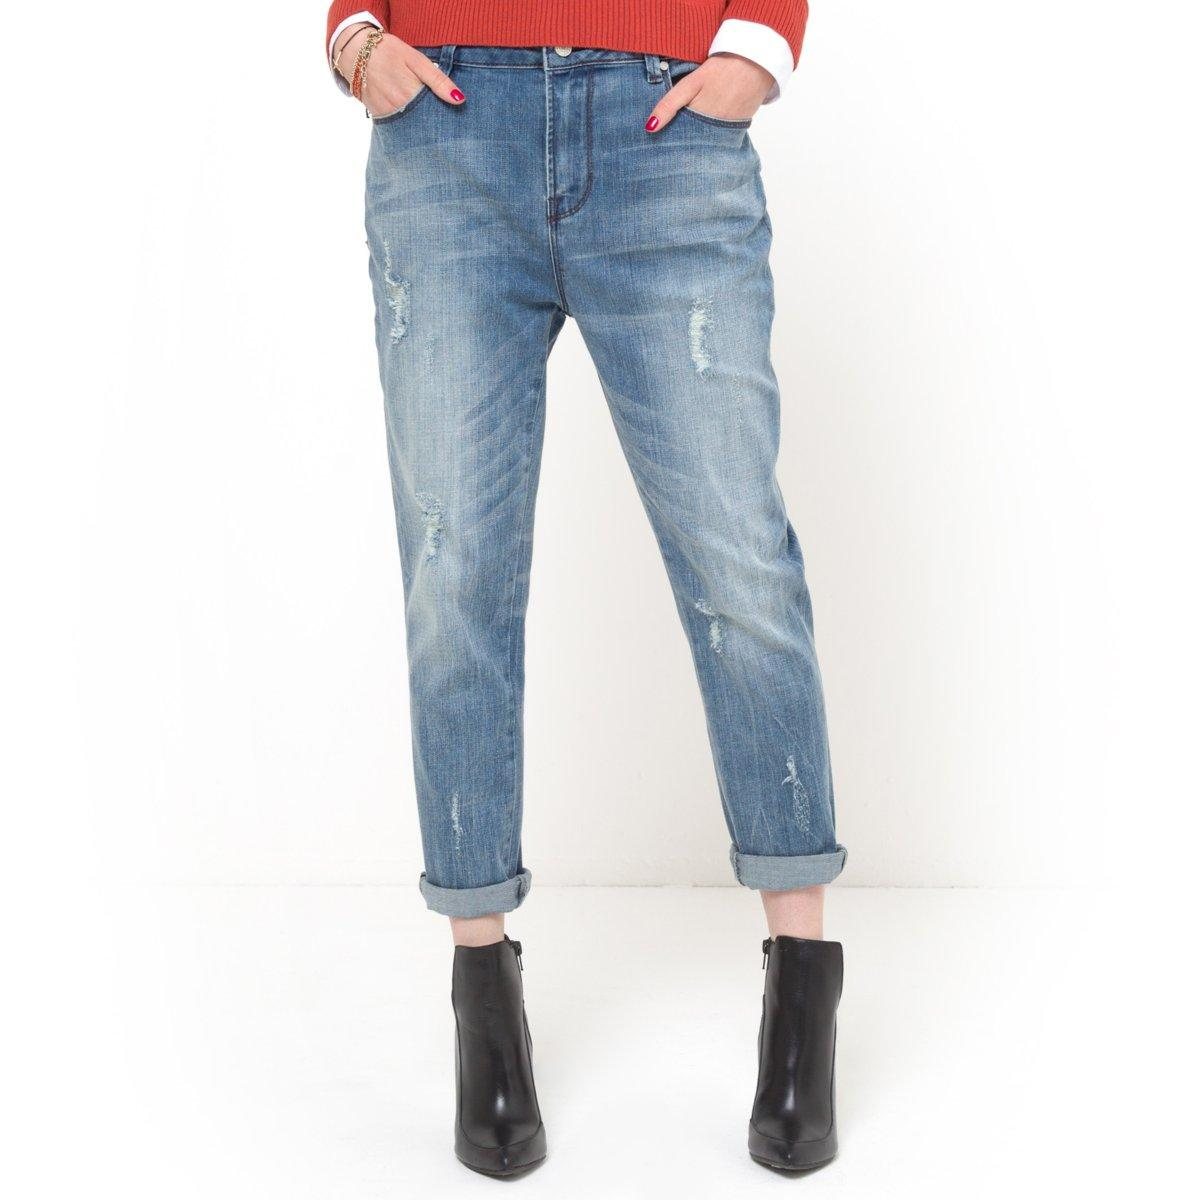 Les jeans originaux de jean-femme.xyz